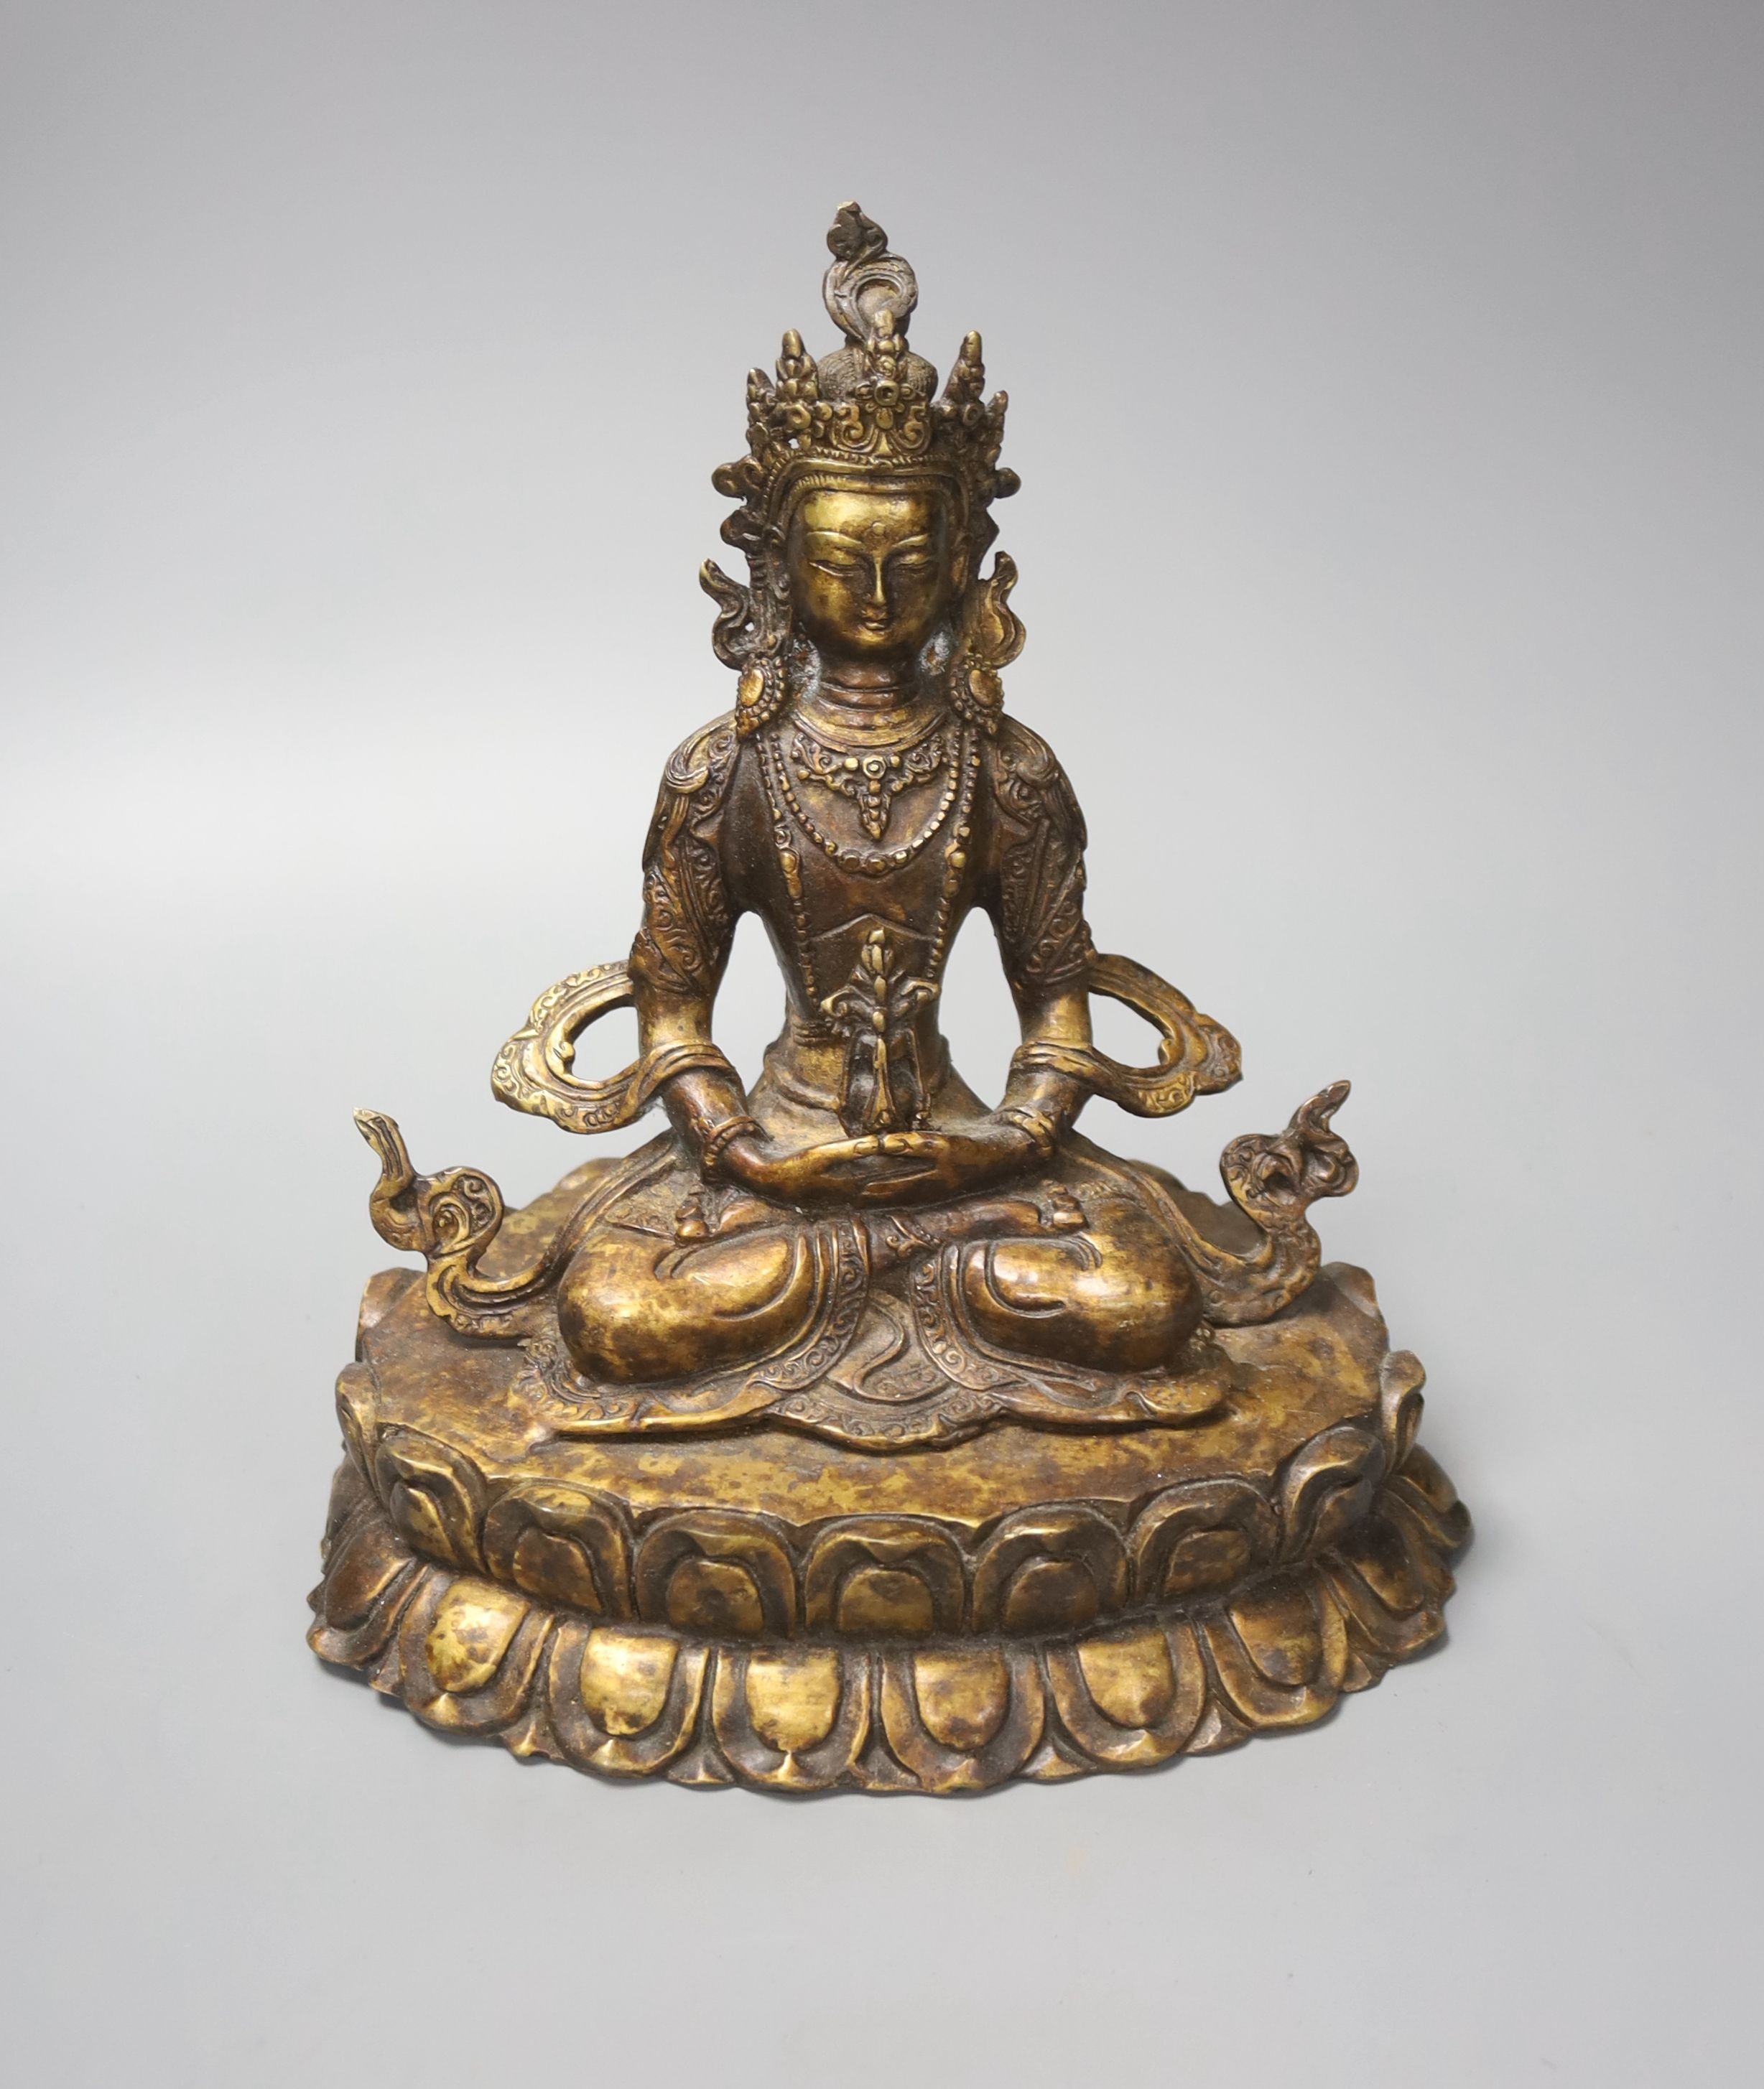 A seated bronze figure of a Bodhisattva, 20cm